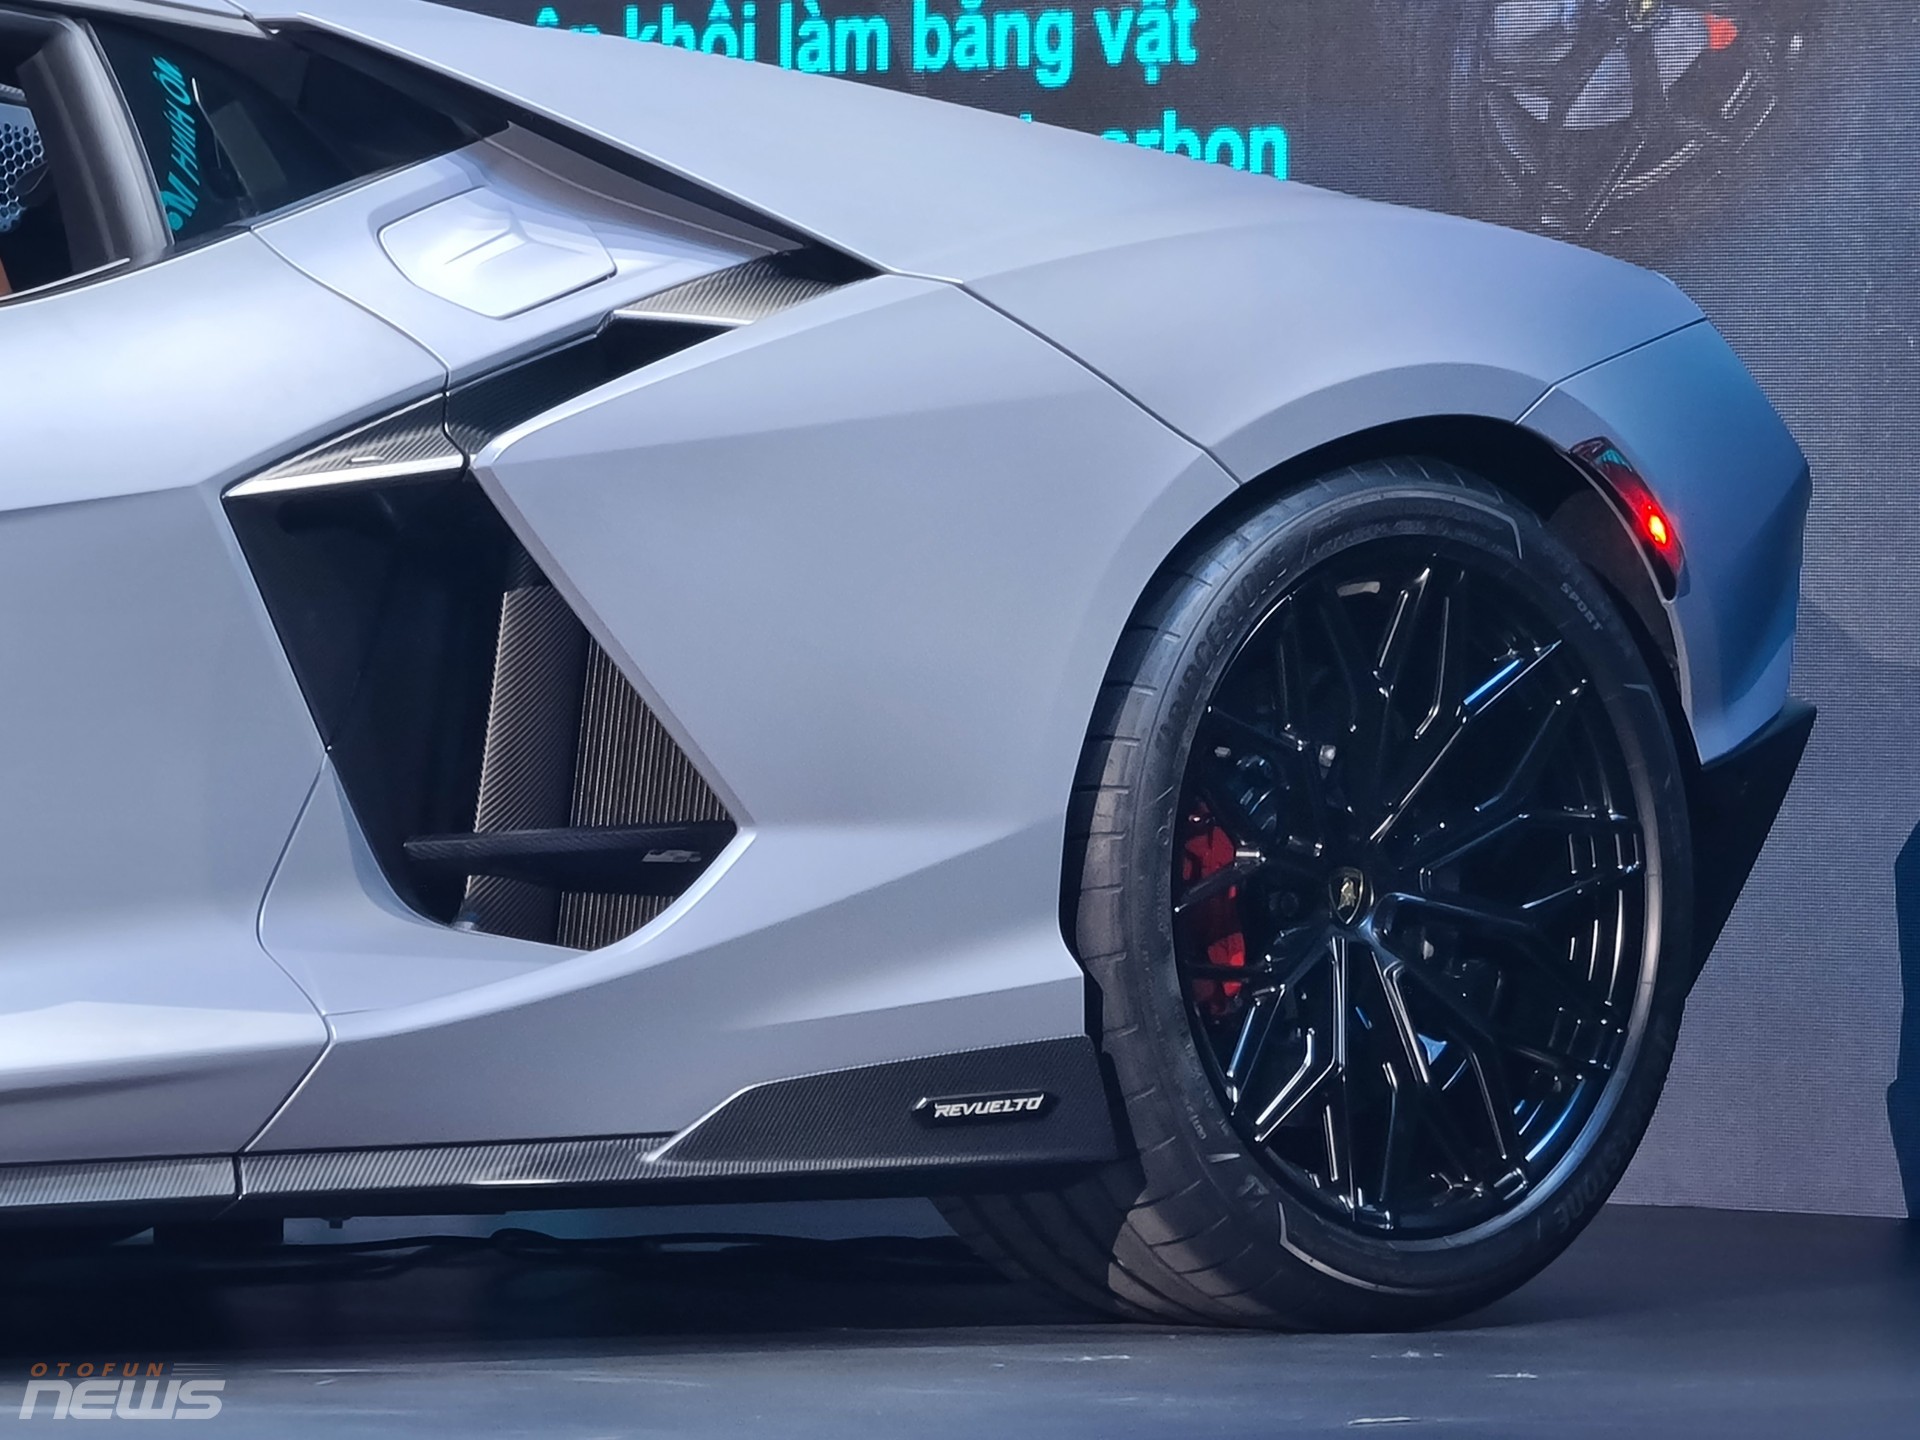 Siêu bò Lamborghini Revuelto được chào bán tại Việt Nam với giá 44 tỷ đồng